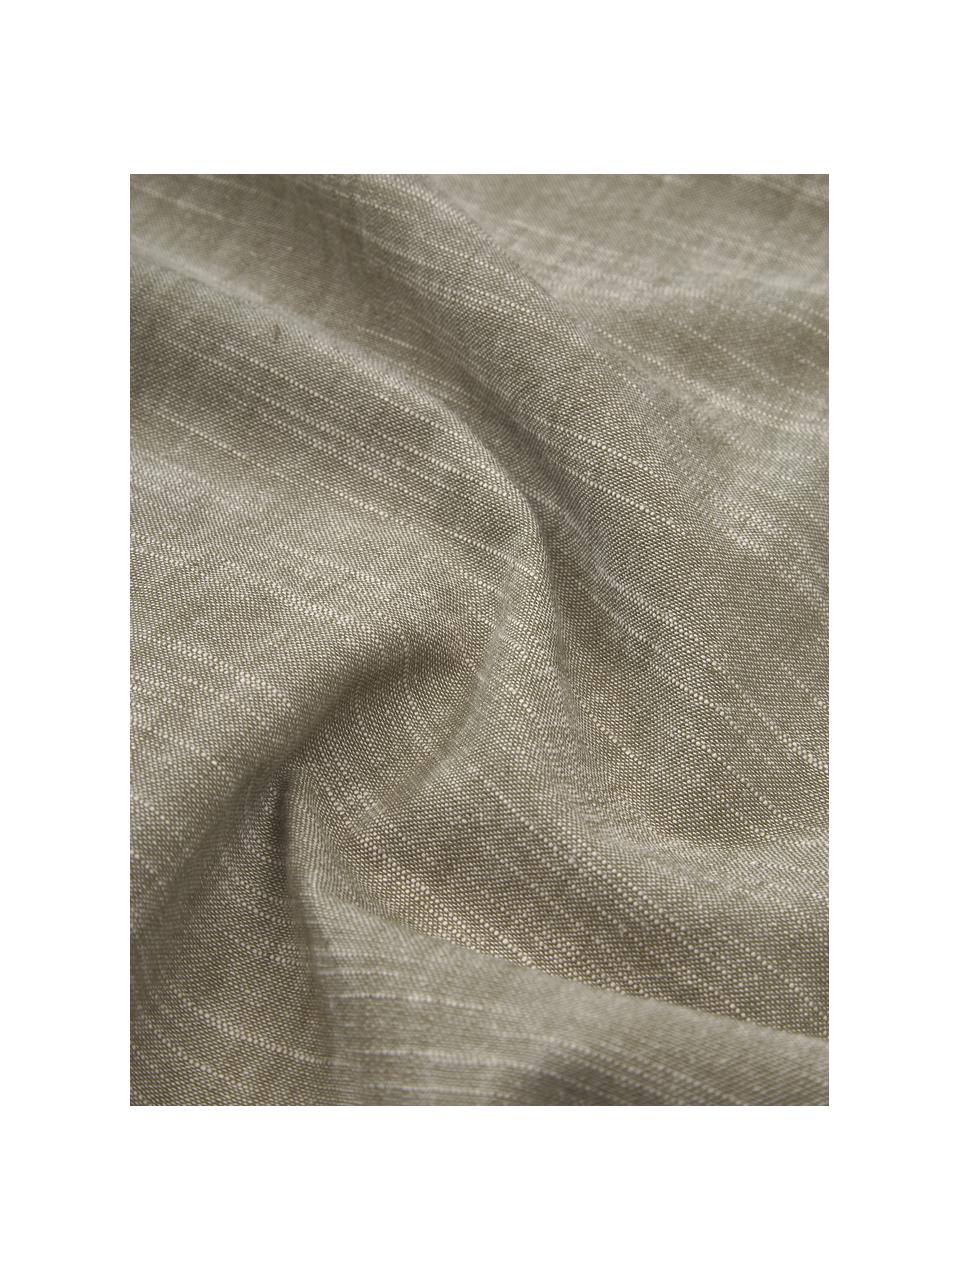 Camino de mesa de algodón con flecos Ivory, 100% algodón, Verde, An 40 x L 150 cm